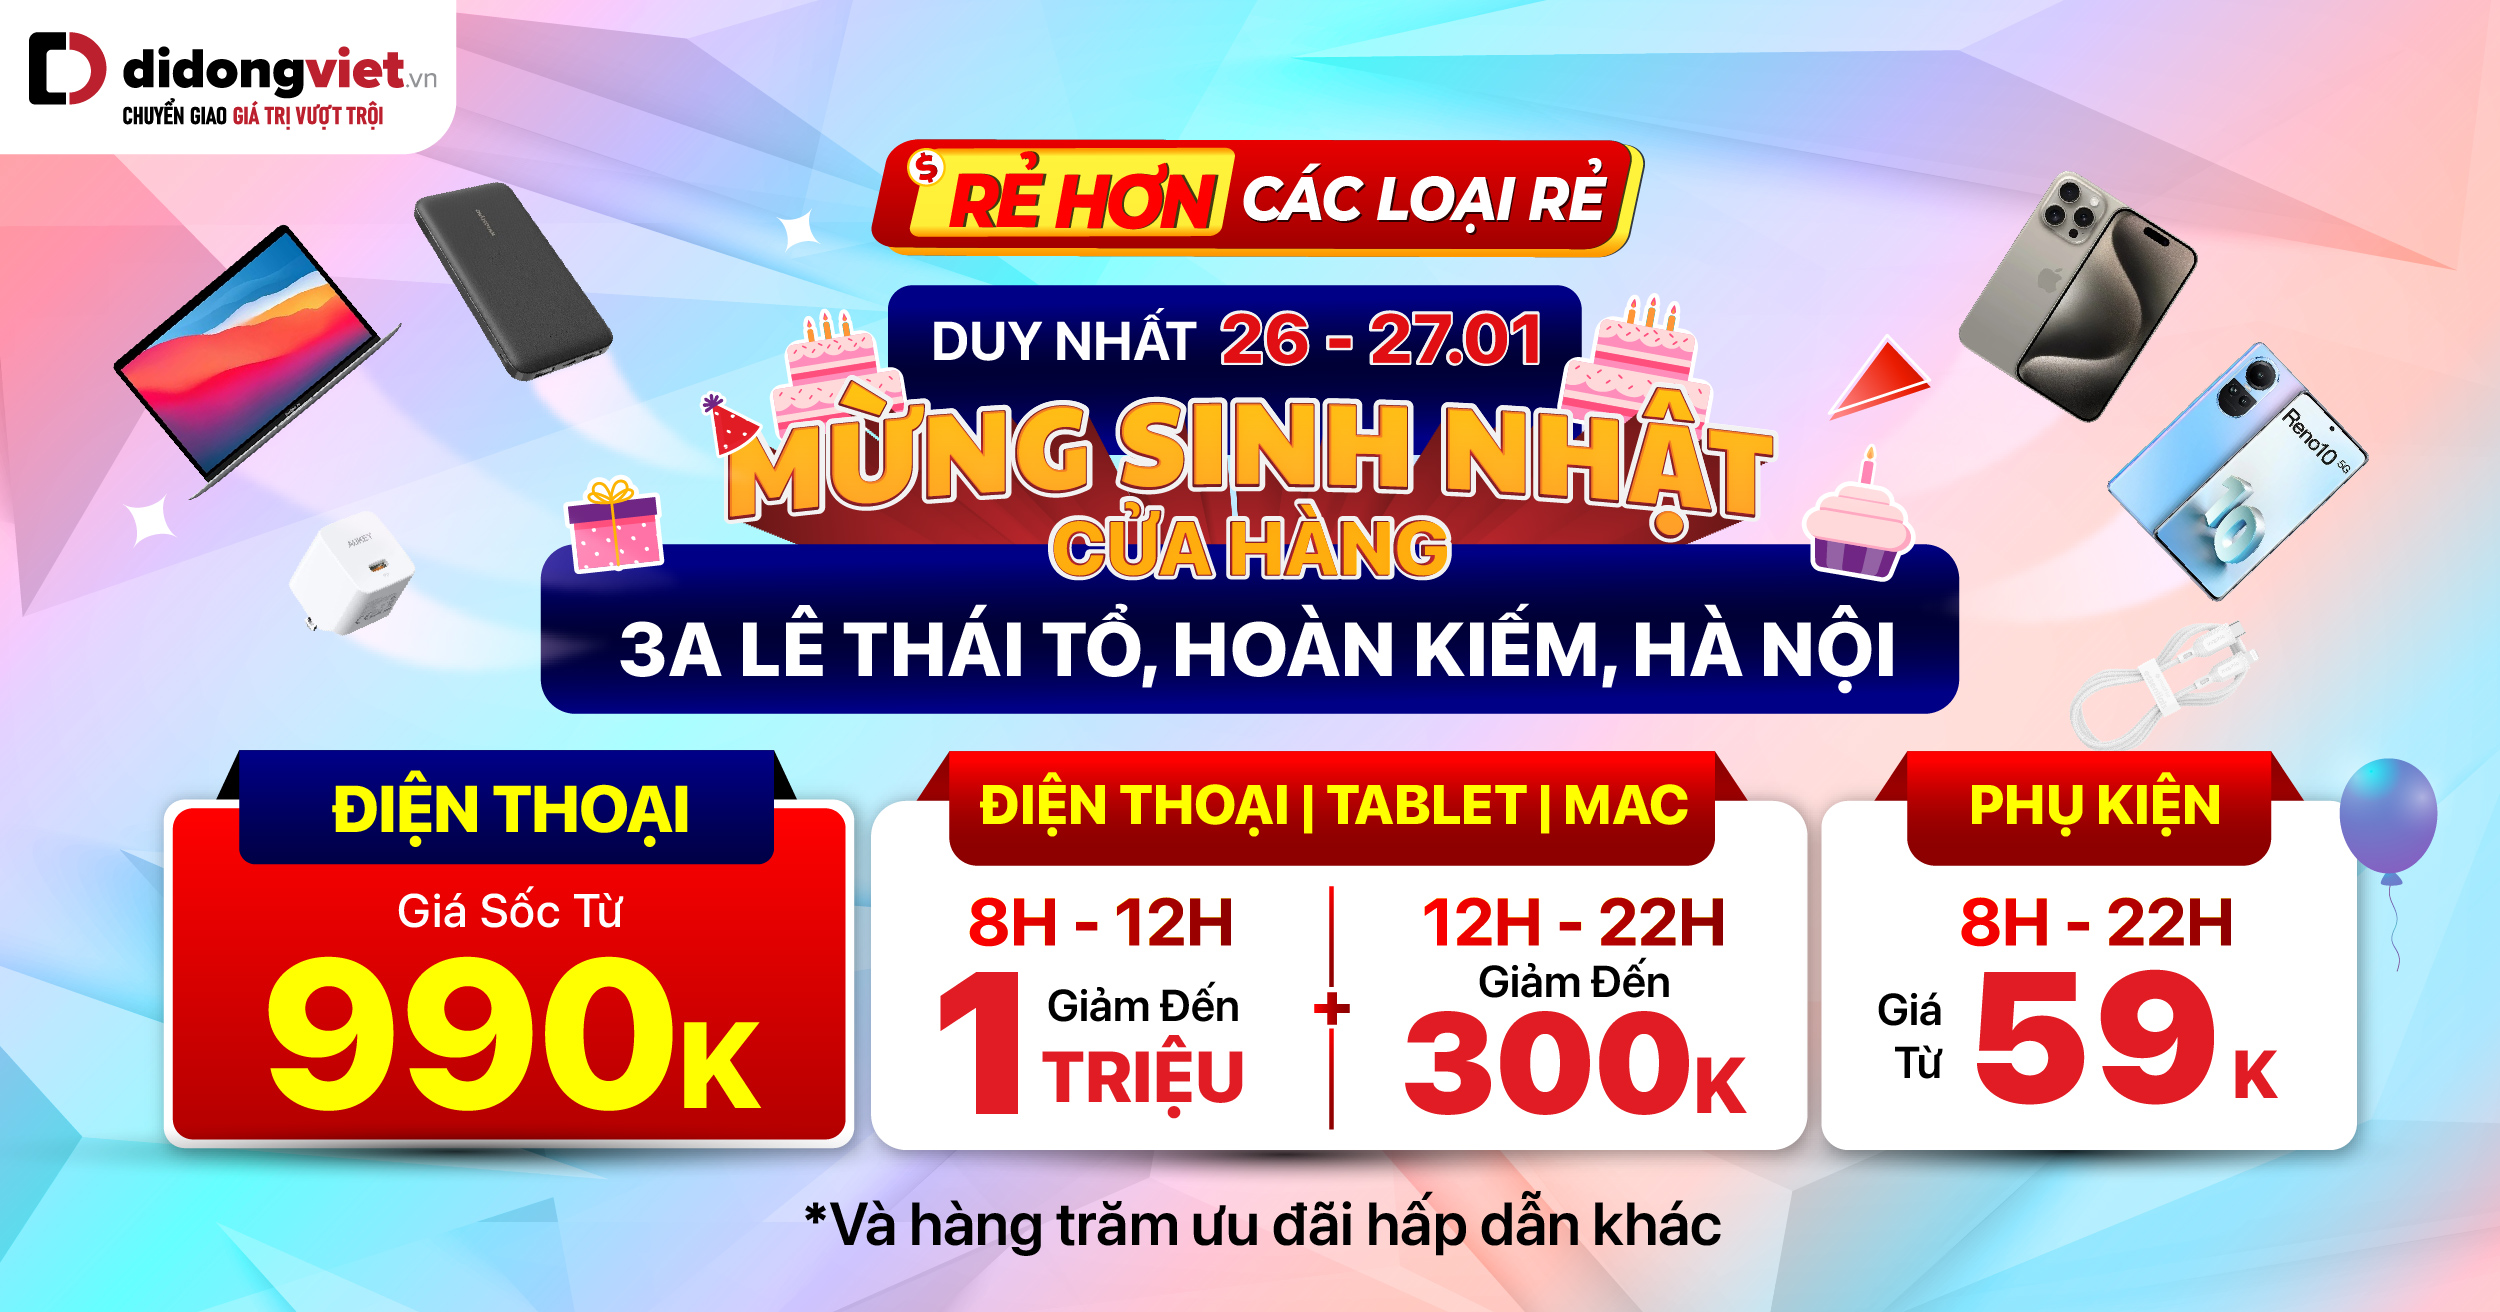 Mừng sinh nhật Di Động Việt 3A Lê Thái Tổ, Hà Nội. Điện thoại | Tablet | Mac giảm thêm đến 1 TRIỆU. Phụ kiện chính hãng giá sốc từ 59K. Duy nhất 26.01 – 27.01 cam kết RẺ HƠN CÁC LOẠI RẺ